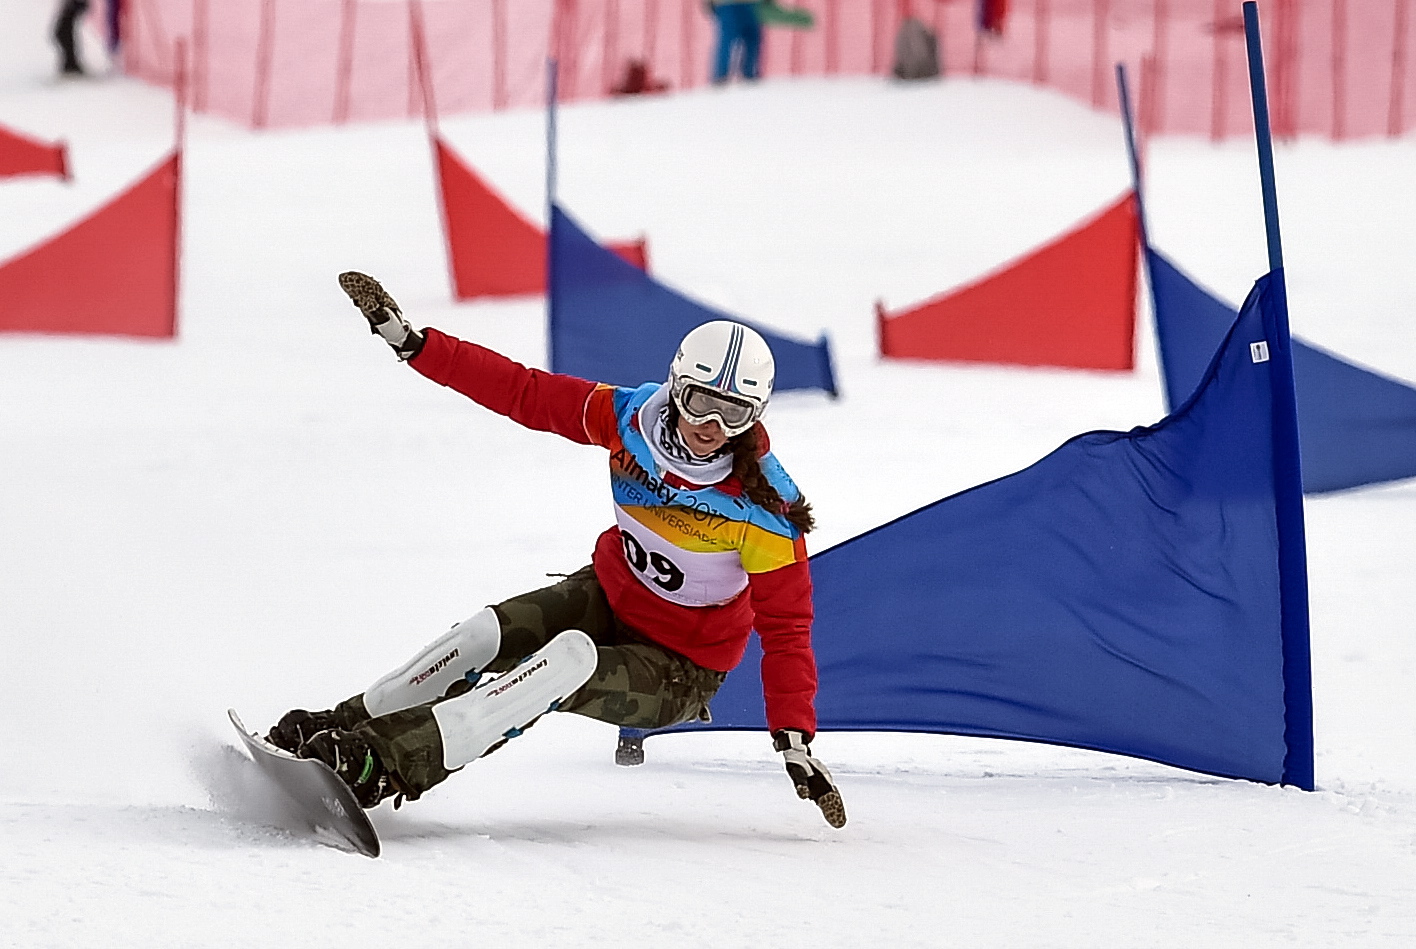 Kazachstan: zwycięstwo polskiej reprezentantki Aleksandr Król w finałowym wyścigu zjazdu snowboardowego równoległego w Ałmaty (foto. PAP/AZS/Paweł Skraba)